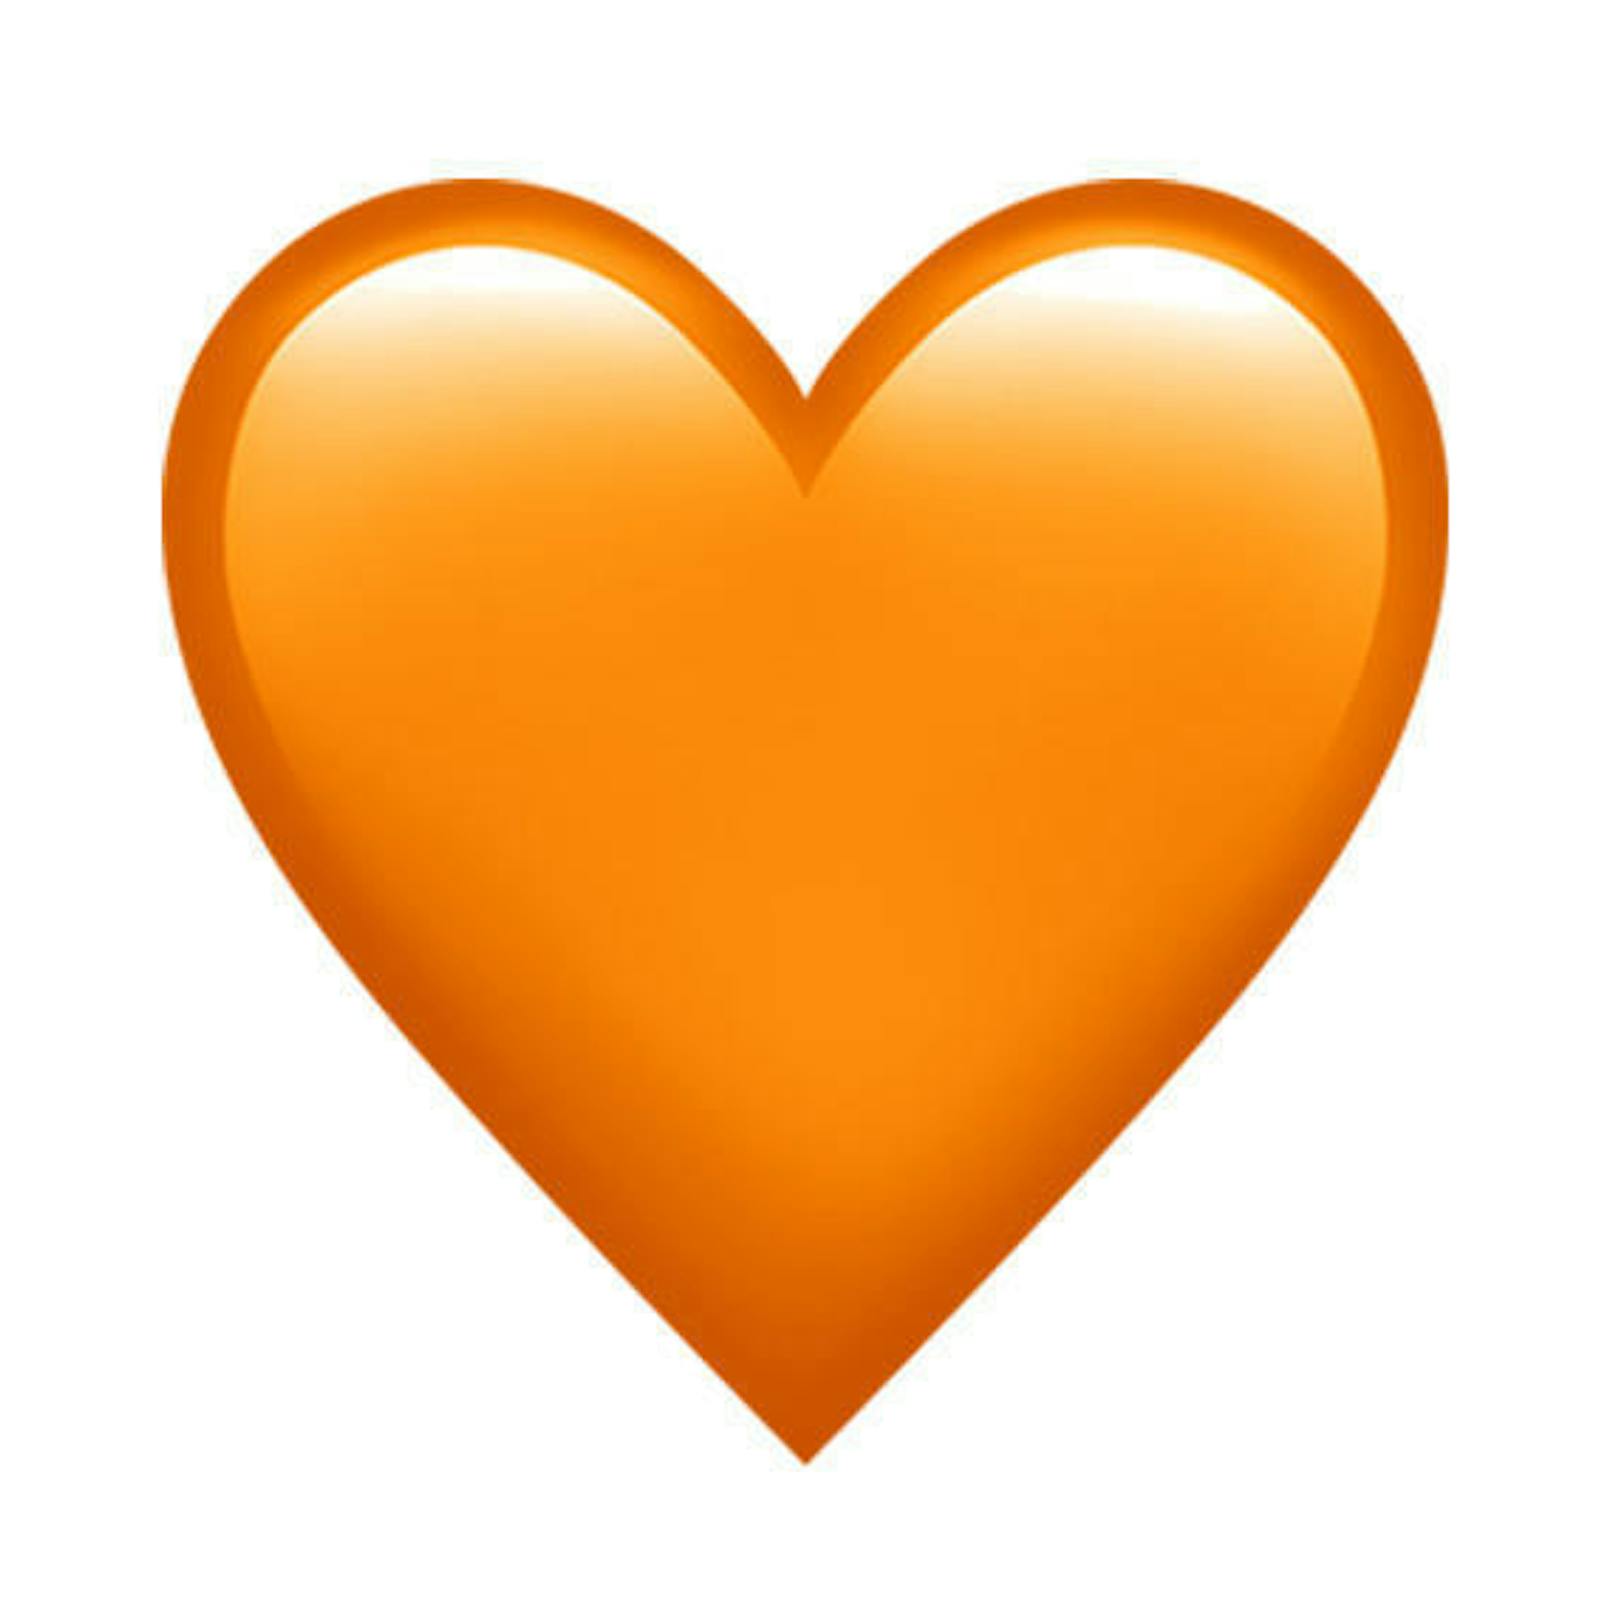 Und auch die bestehenden Symbole wurden ergänzt. Das Herz gibt es nun auch in Orange.